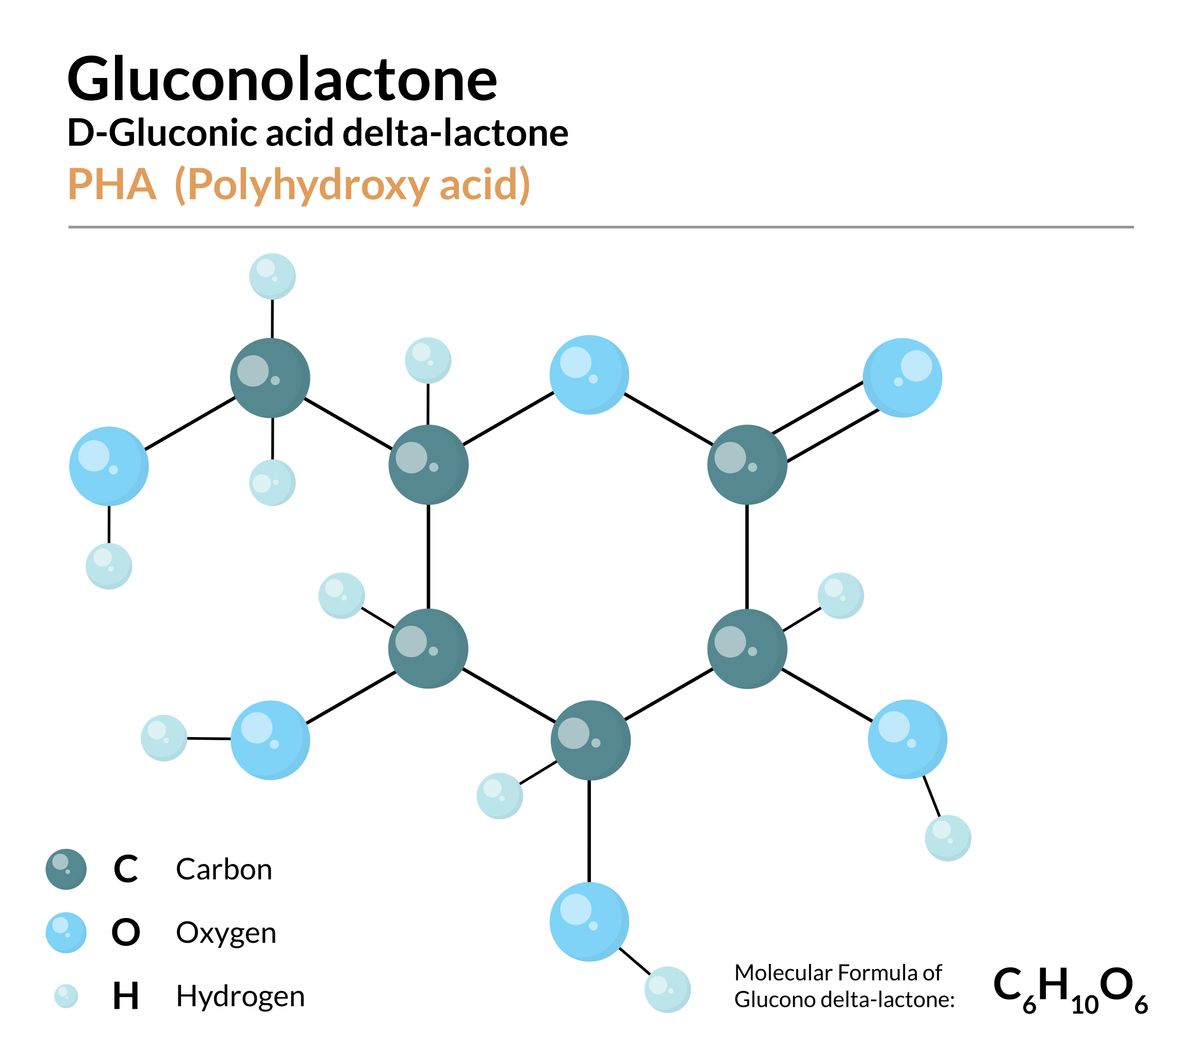 葡糖酸內酯Glucosactone是什麼?